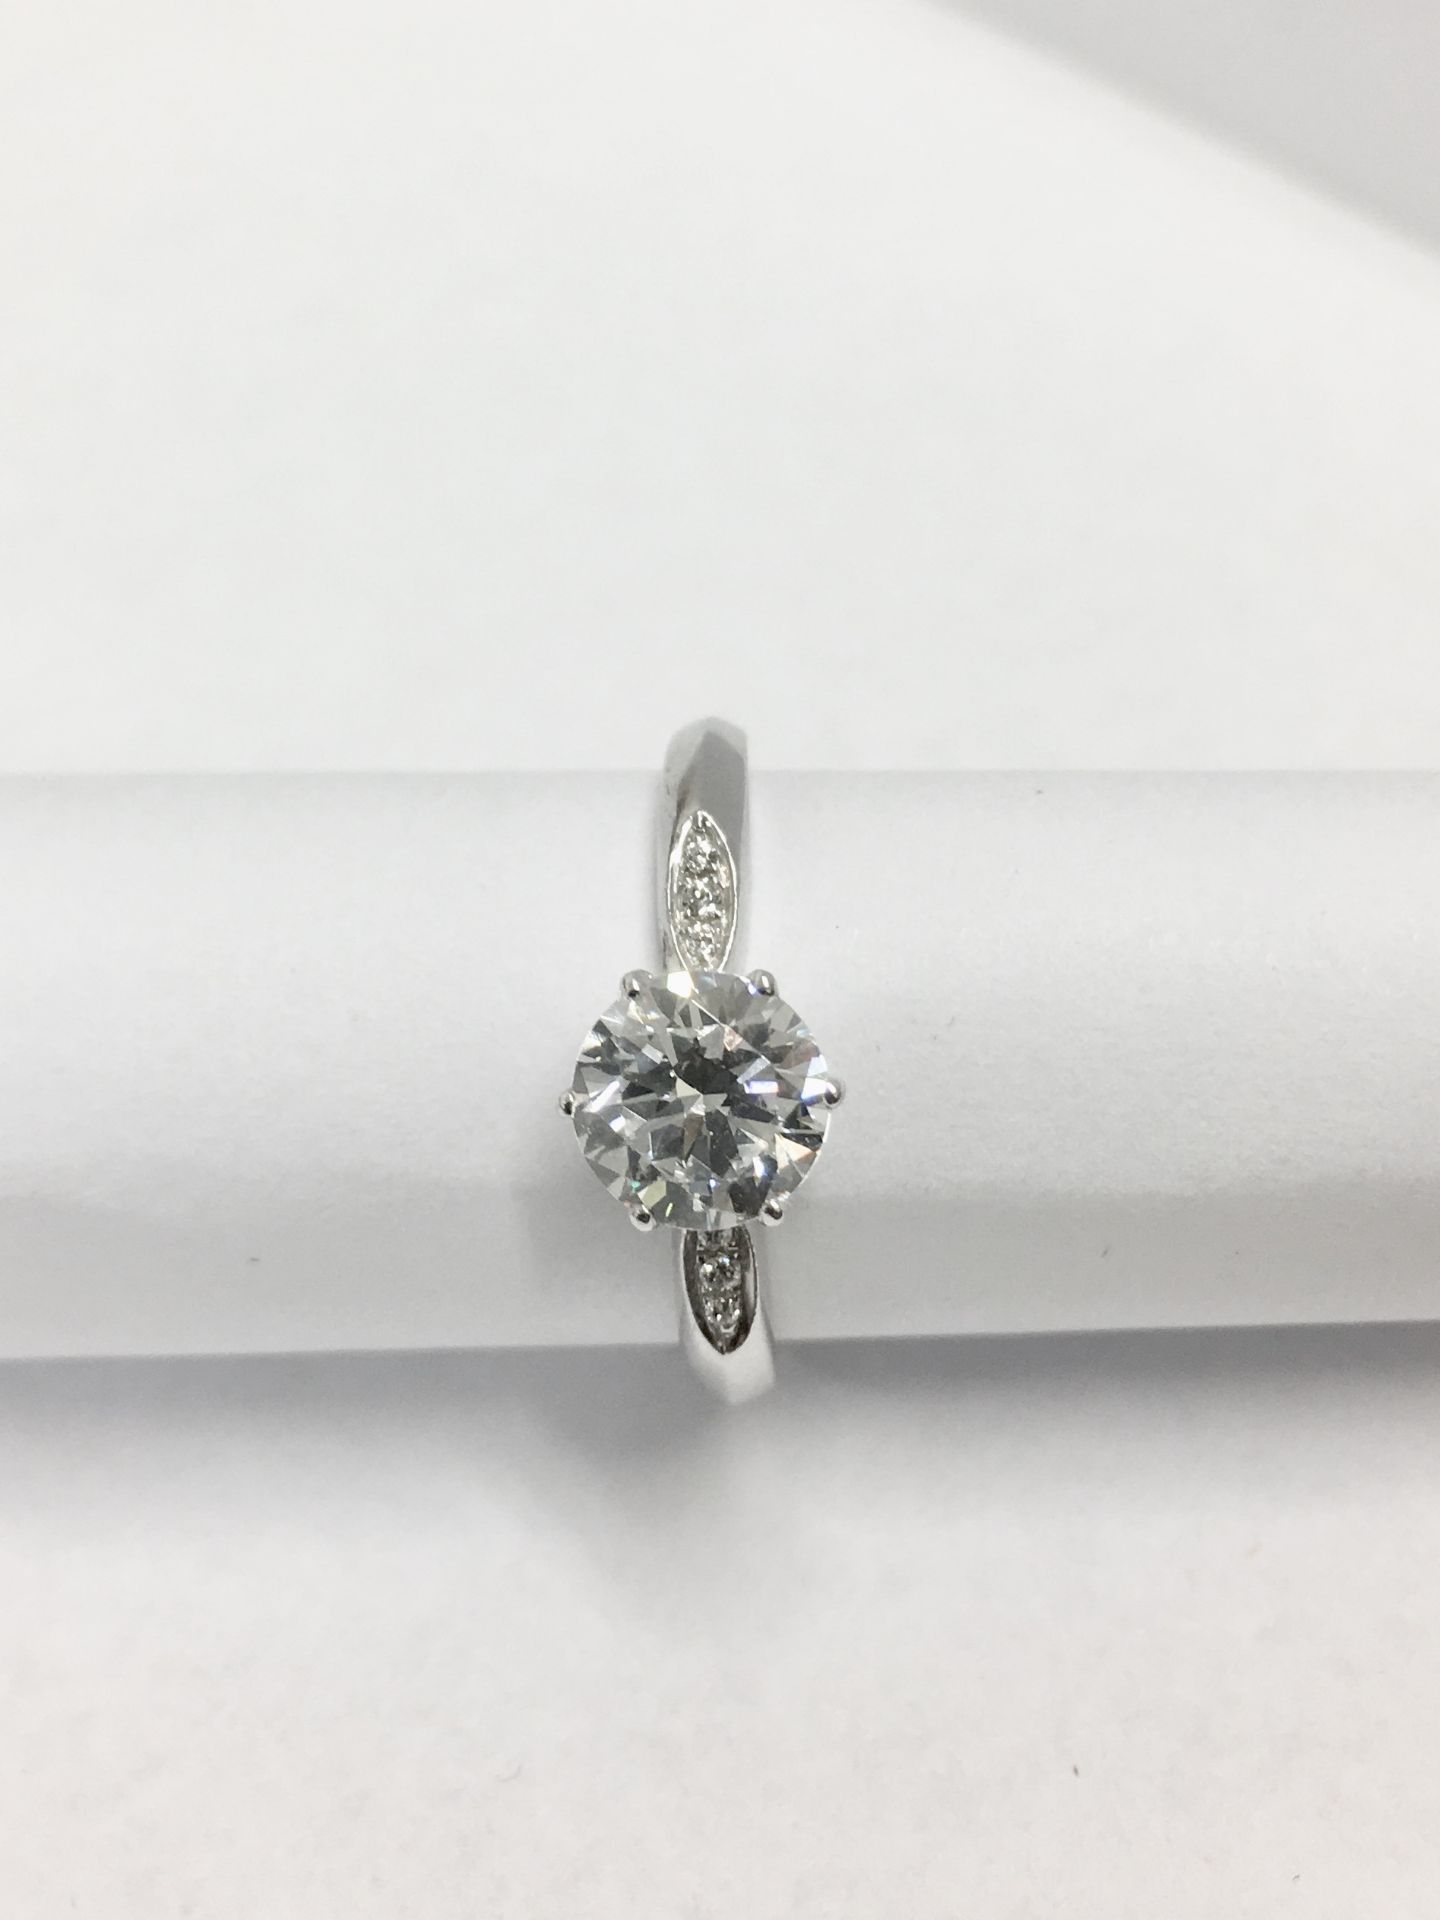 Platinum diamond solitaire ring,0.50ct brilliant cut diamond h colour vs clarity(clarity enhanced), - Image 4 of 4